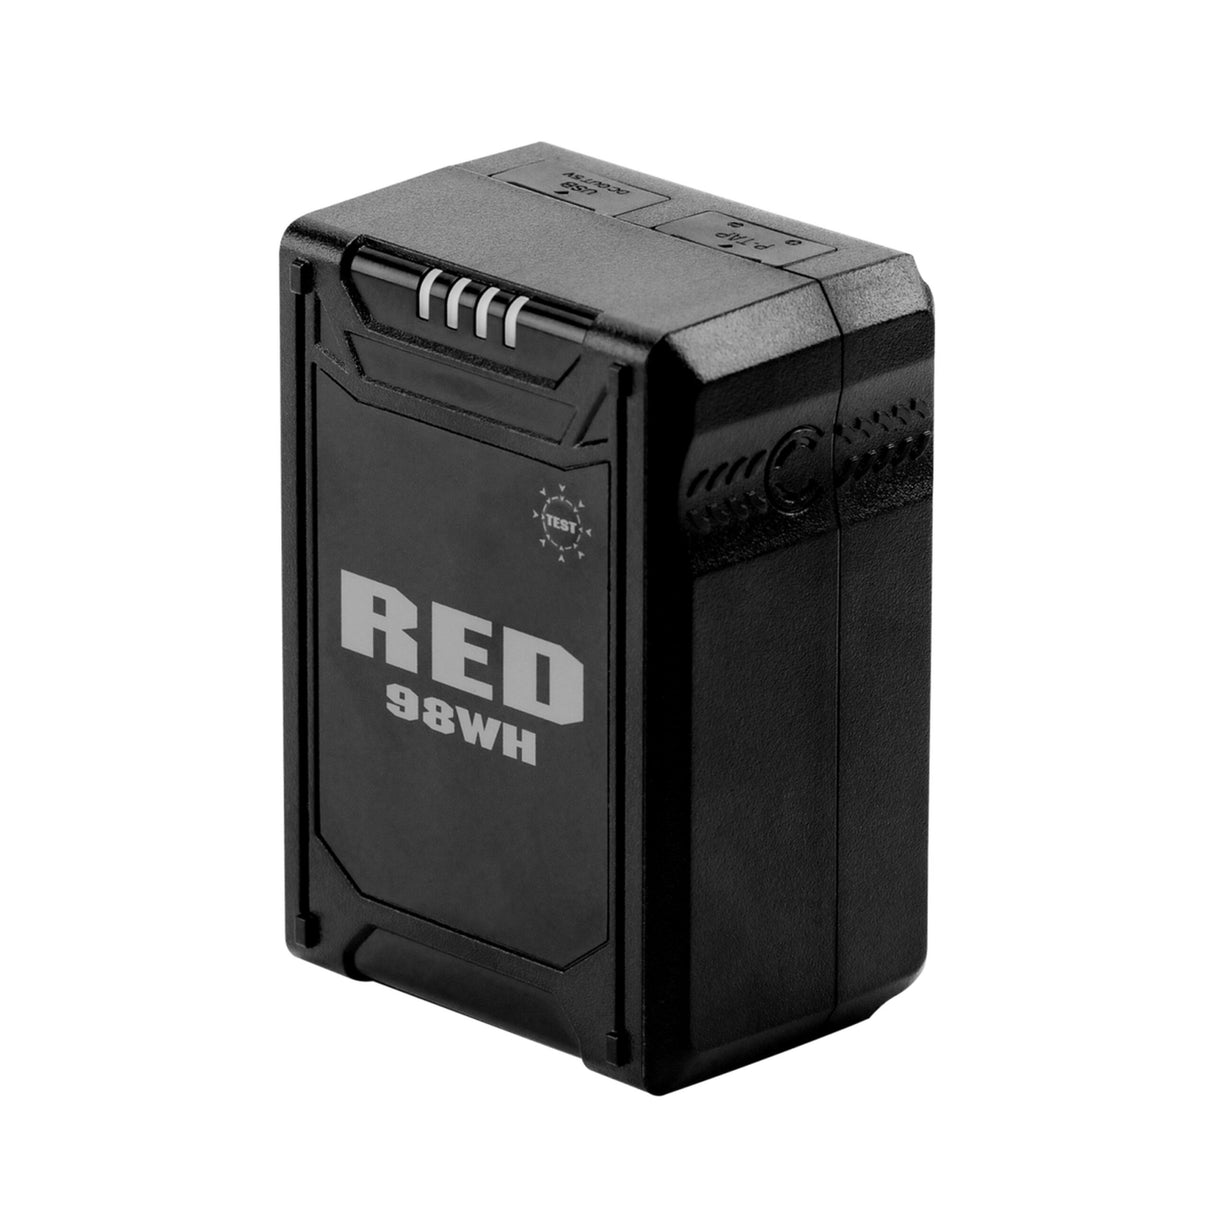 RED V-Raptor Camera Production Pack Lite